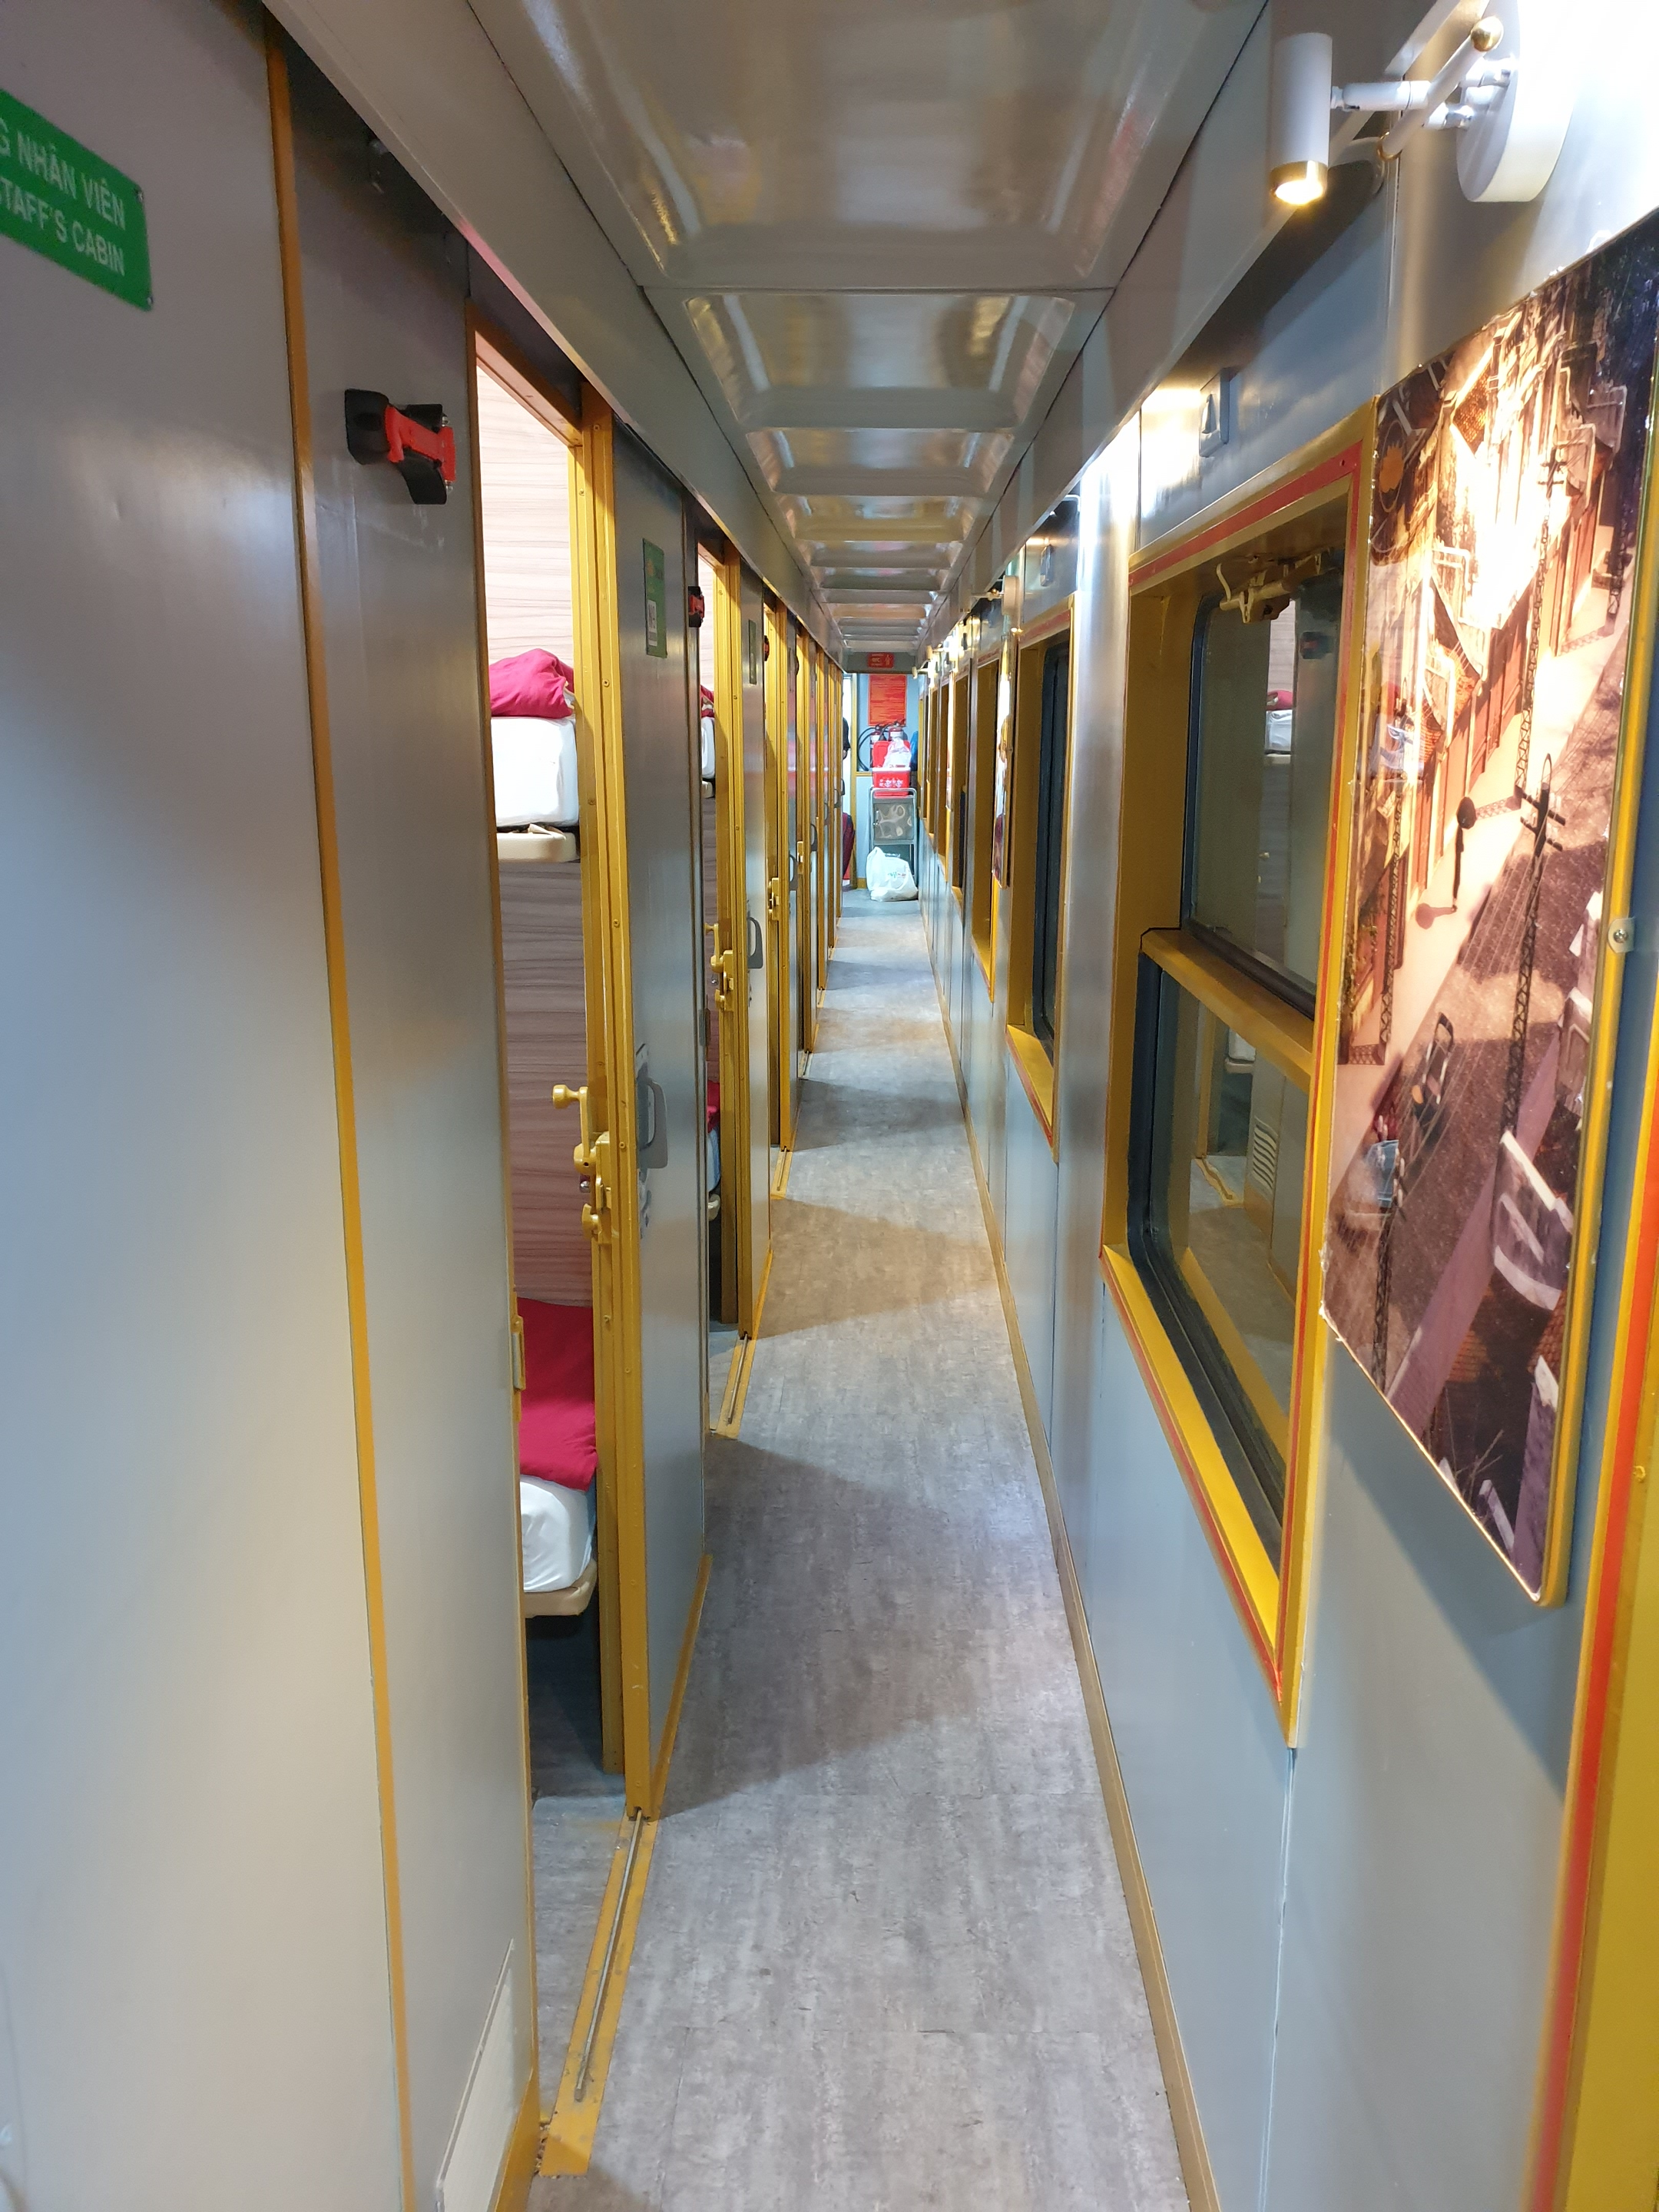 Hanoi - Dong Hoi in VIP 2 berth-cabin Lotus train service on SE19 (19h50 – 06h02) - Price per person not per cabin